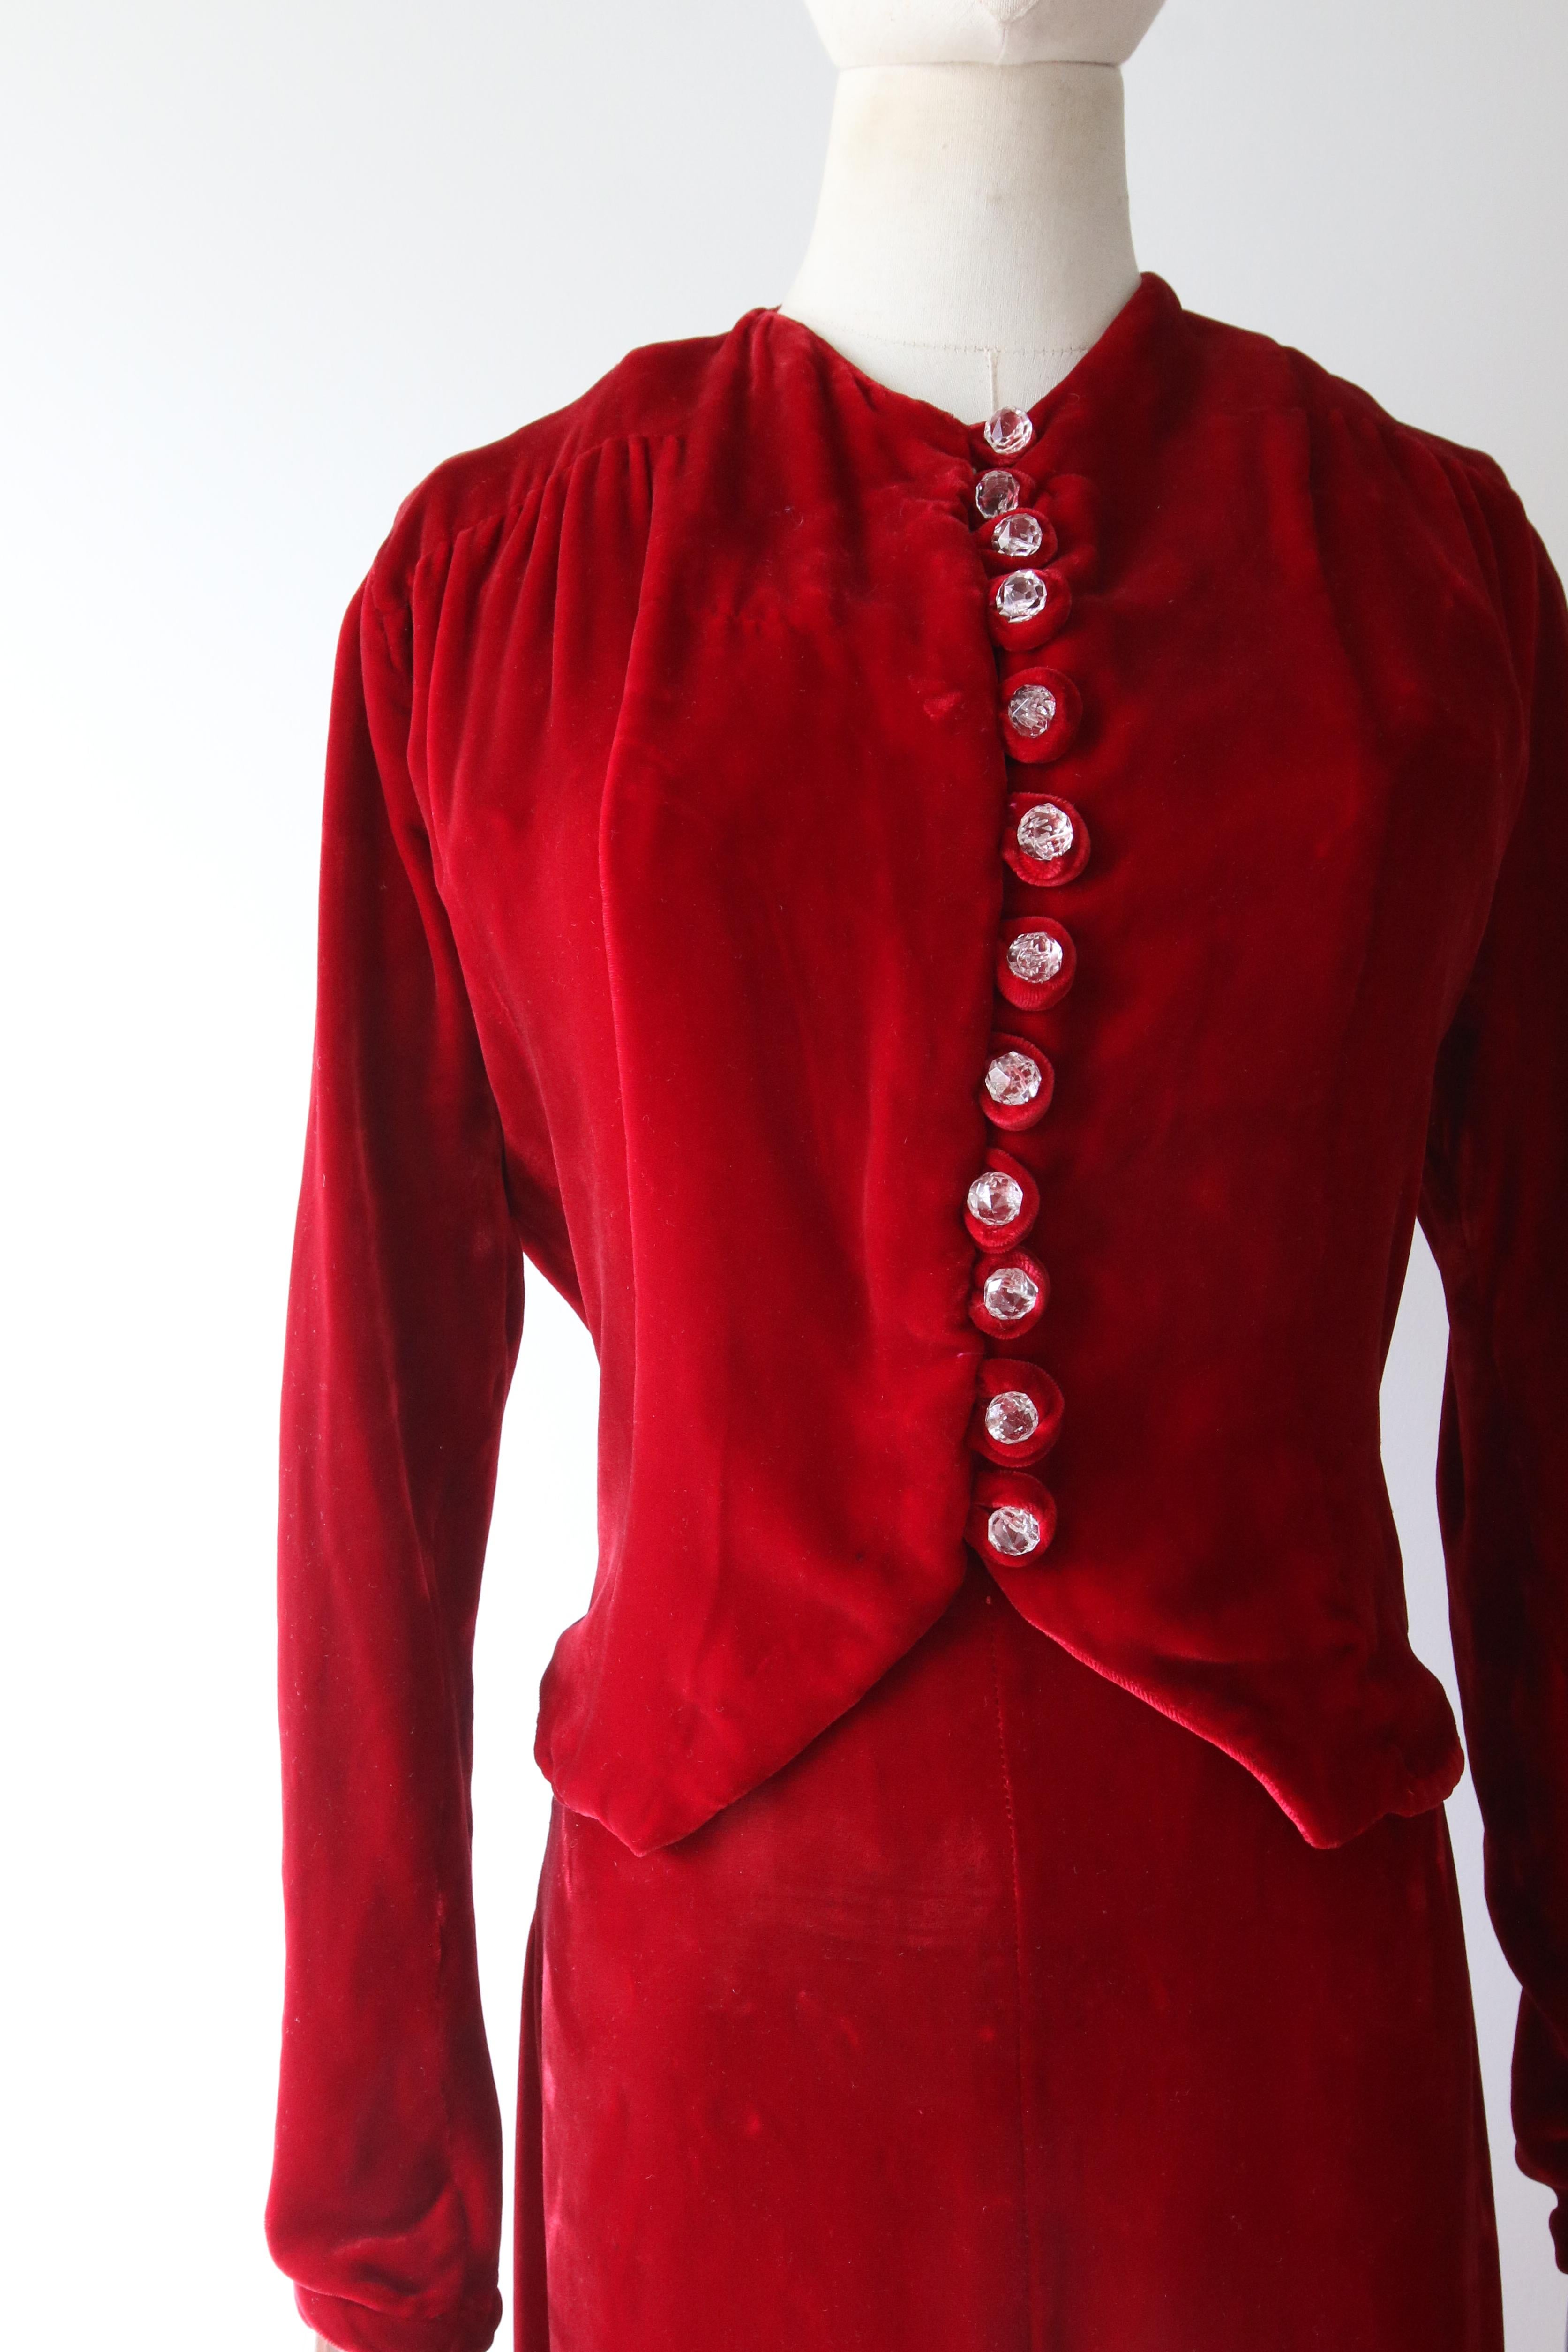 Vintage 1930's red velvet dress and jacket 1930's bias cut UK 6- 8 US 2-4 For Sale 7